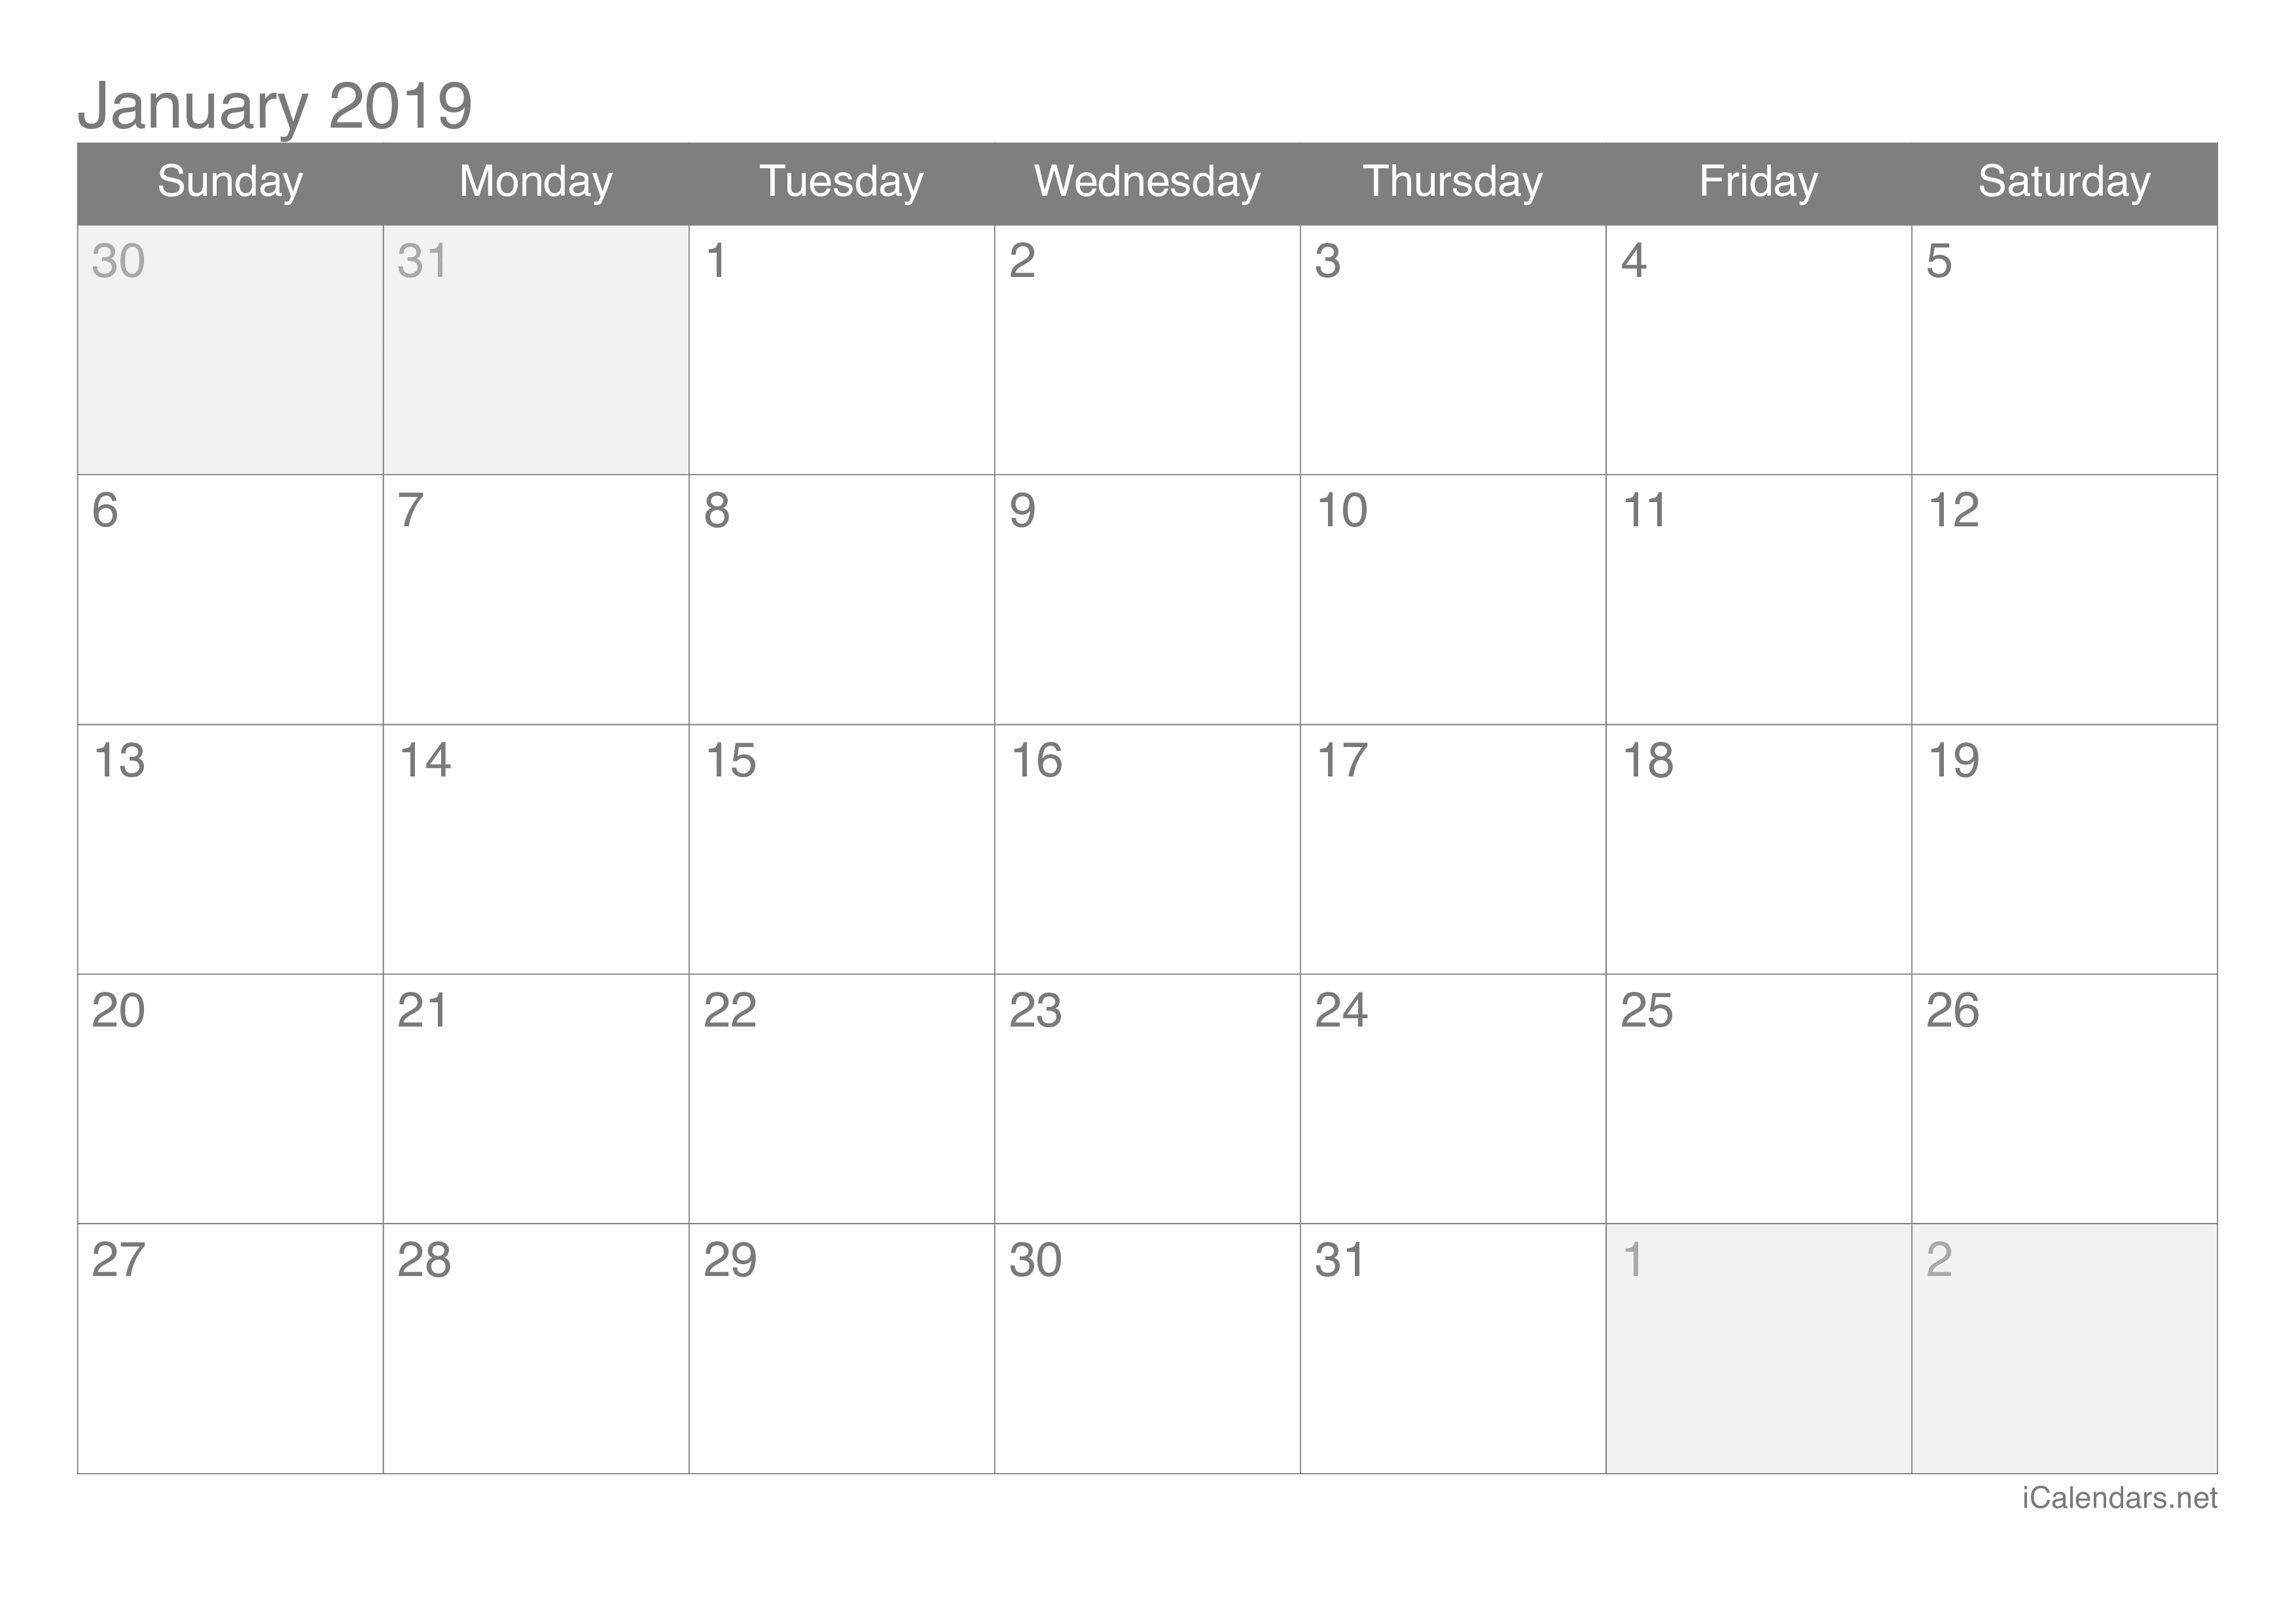 january-2019-calendar-with-week-numbers-printable